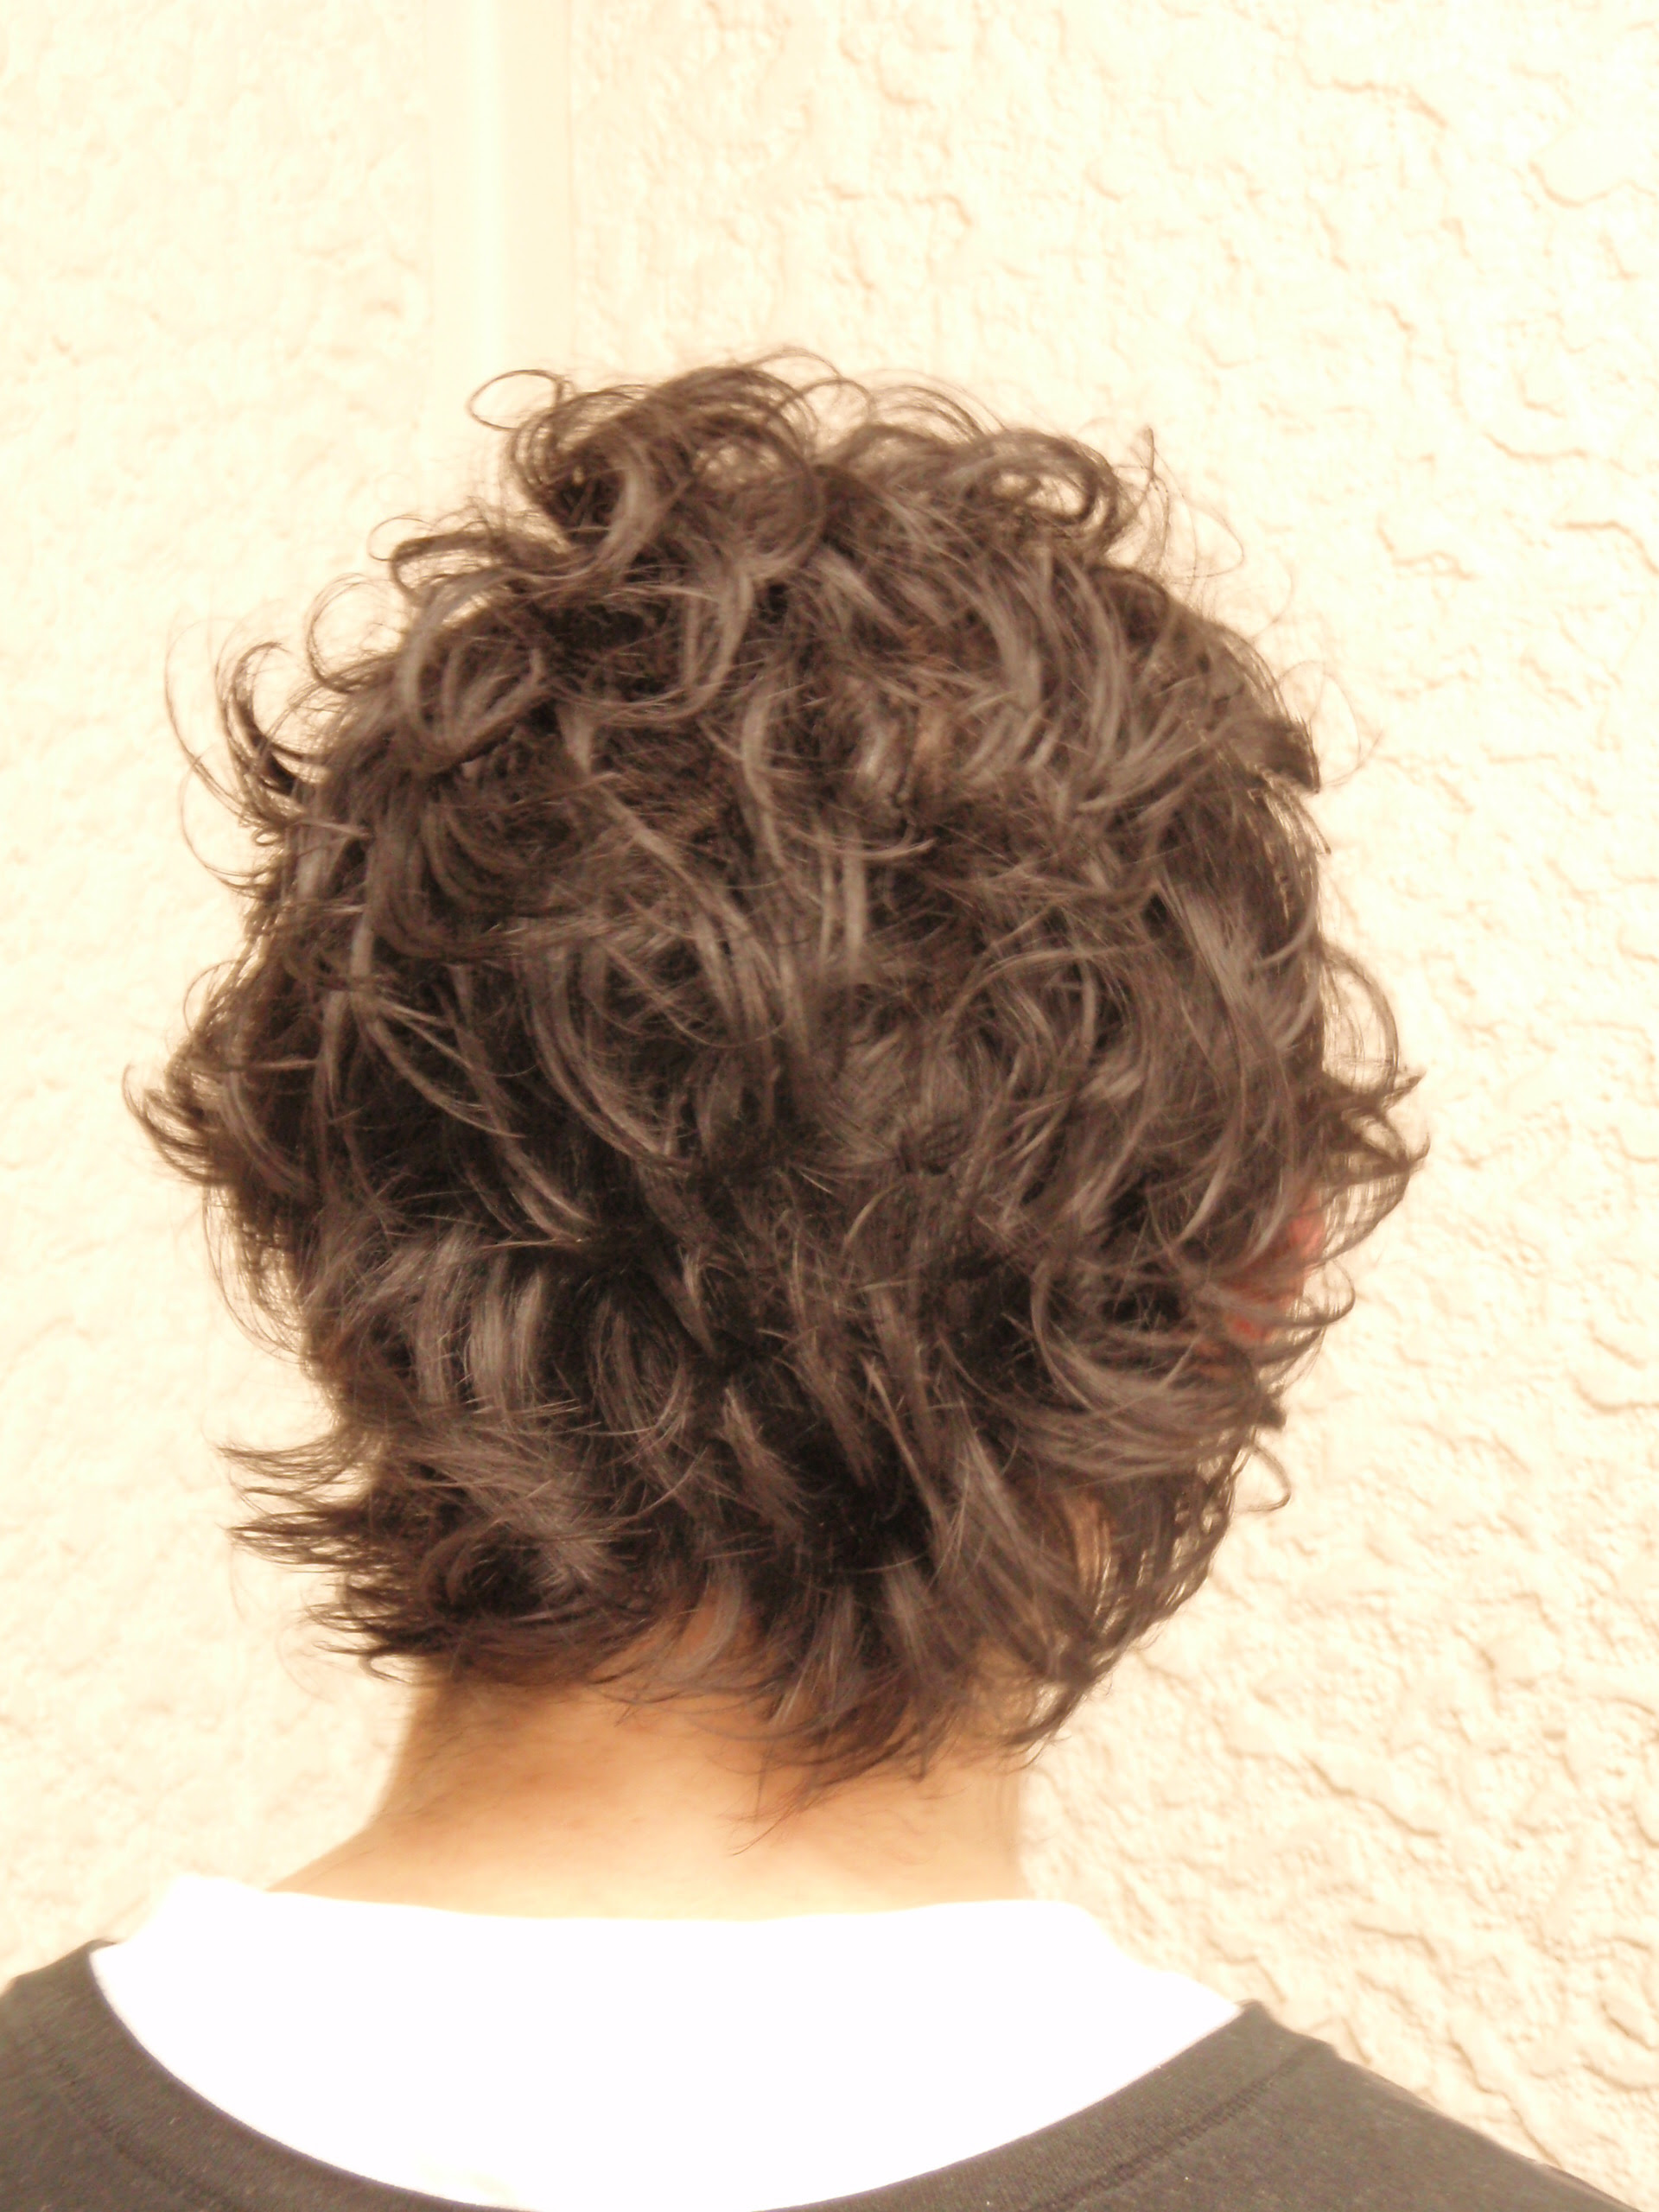 【ベスト】 強い くせ毛 ヘア スタイル インスピレーションのための髪型画像Arinekamigata